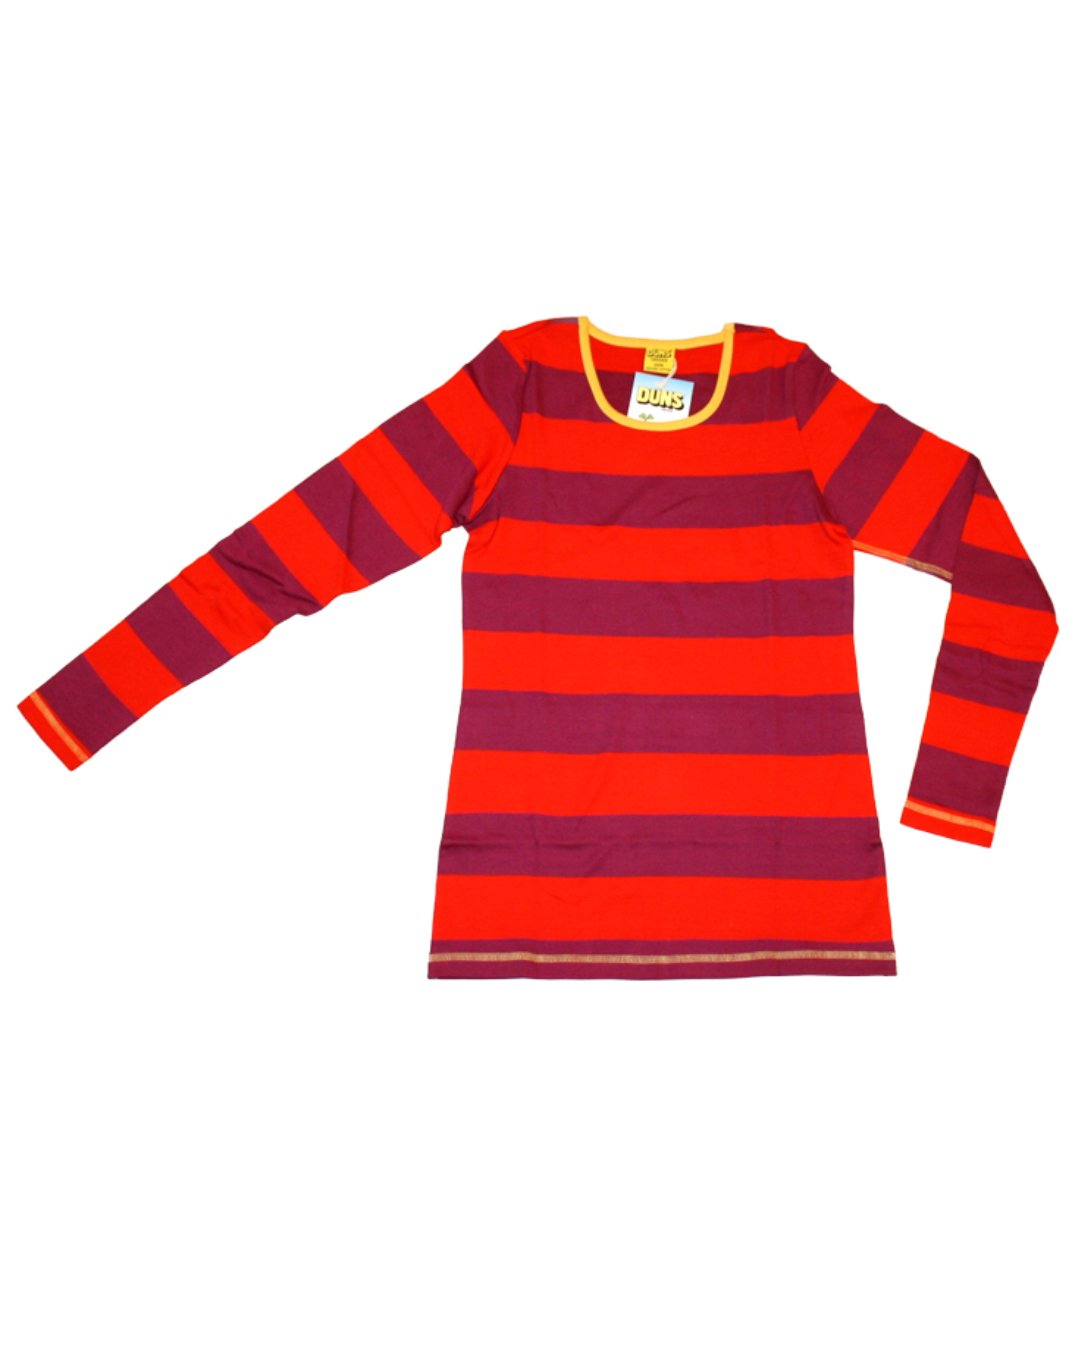 DamenShirt aus Biobaumwolle in rot/weinrot von DUNS Sweden